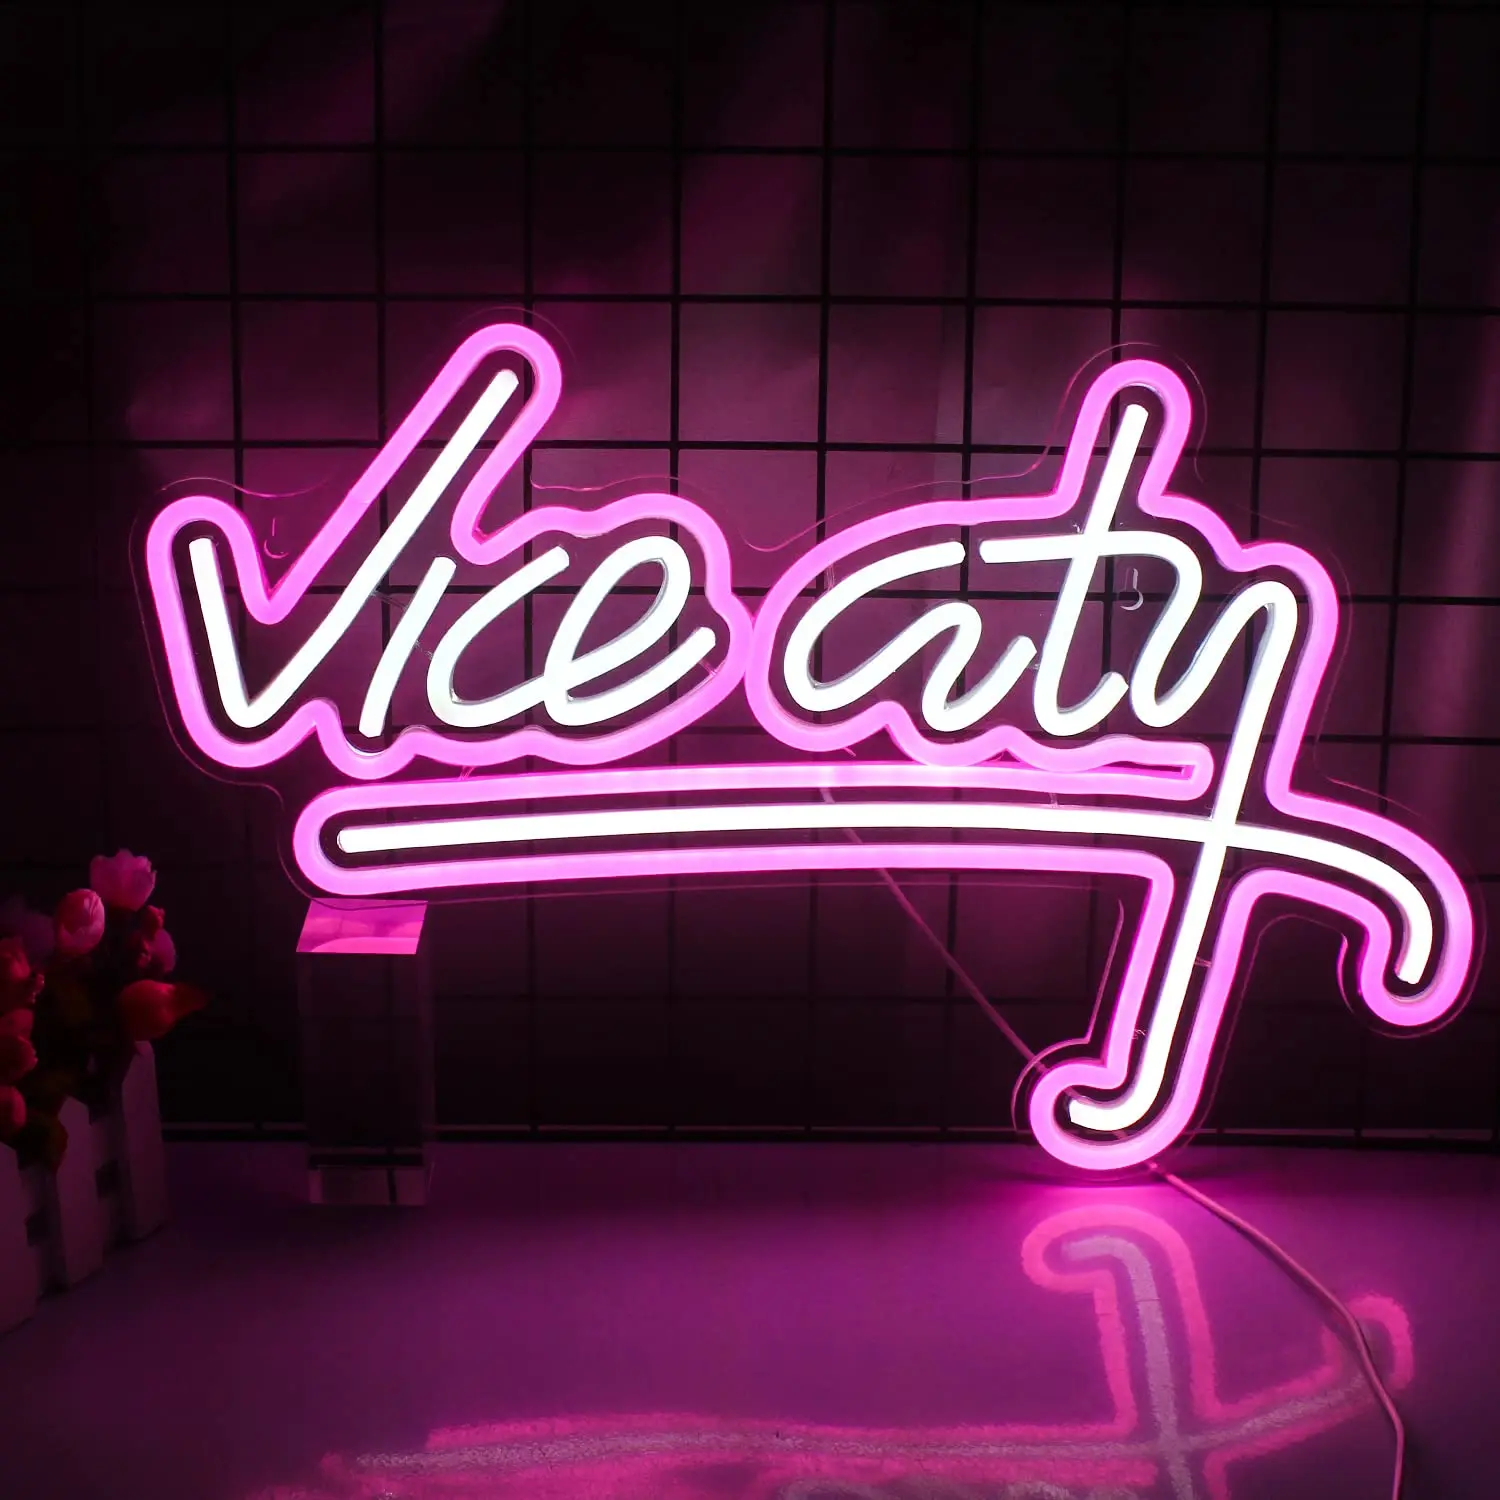 

Неоновая вывеска Vice City, розовая светодиодная вывеска для спальни, Настенный декор, USB-питание, неоновая надпись светильник для игровой комнаты, бара, мужской пещеры, игровой зоны